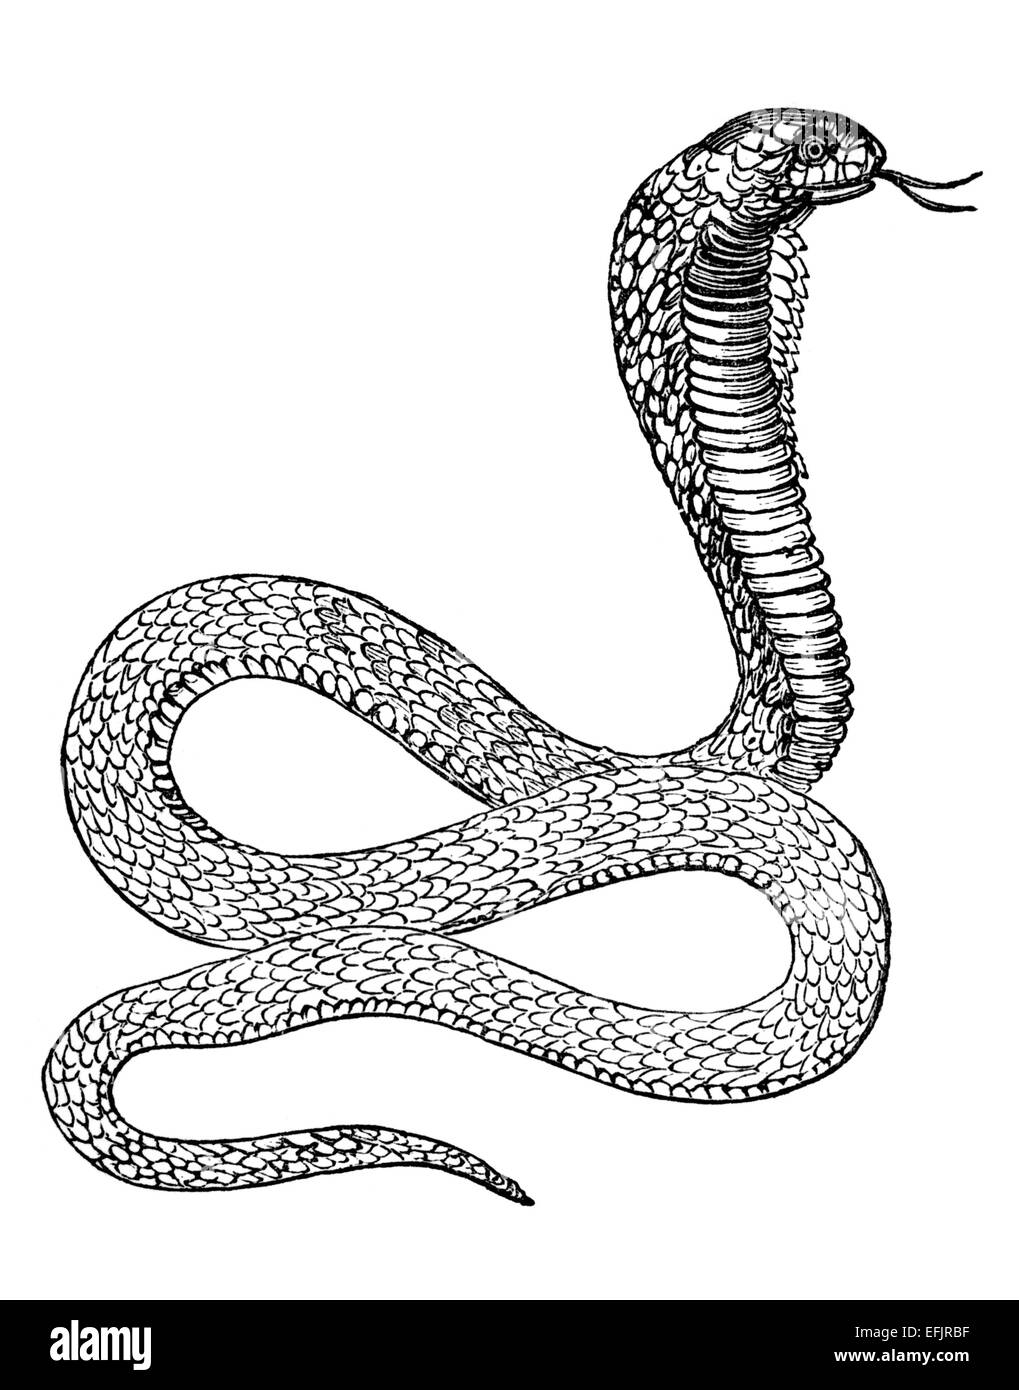 Incisione in stile vittoriano di un cobra. Restaurata digitalmente immagine da una metà del XIX secolo enciclopedia. Foto Stock